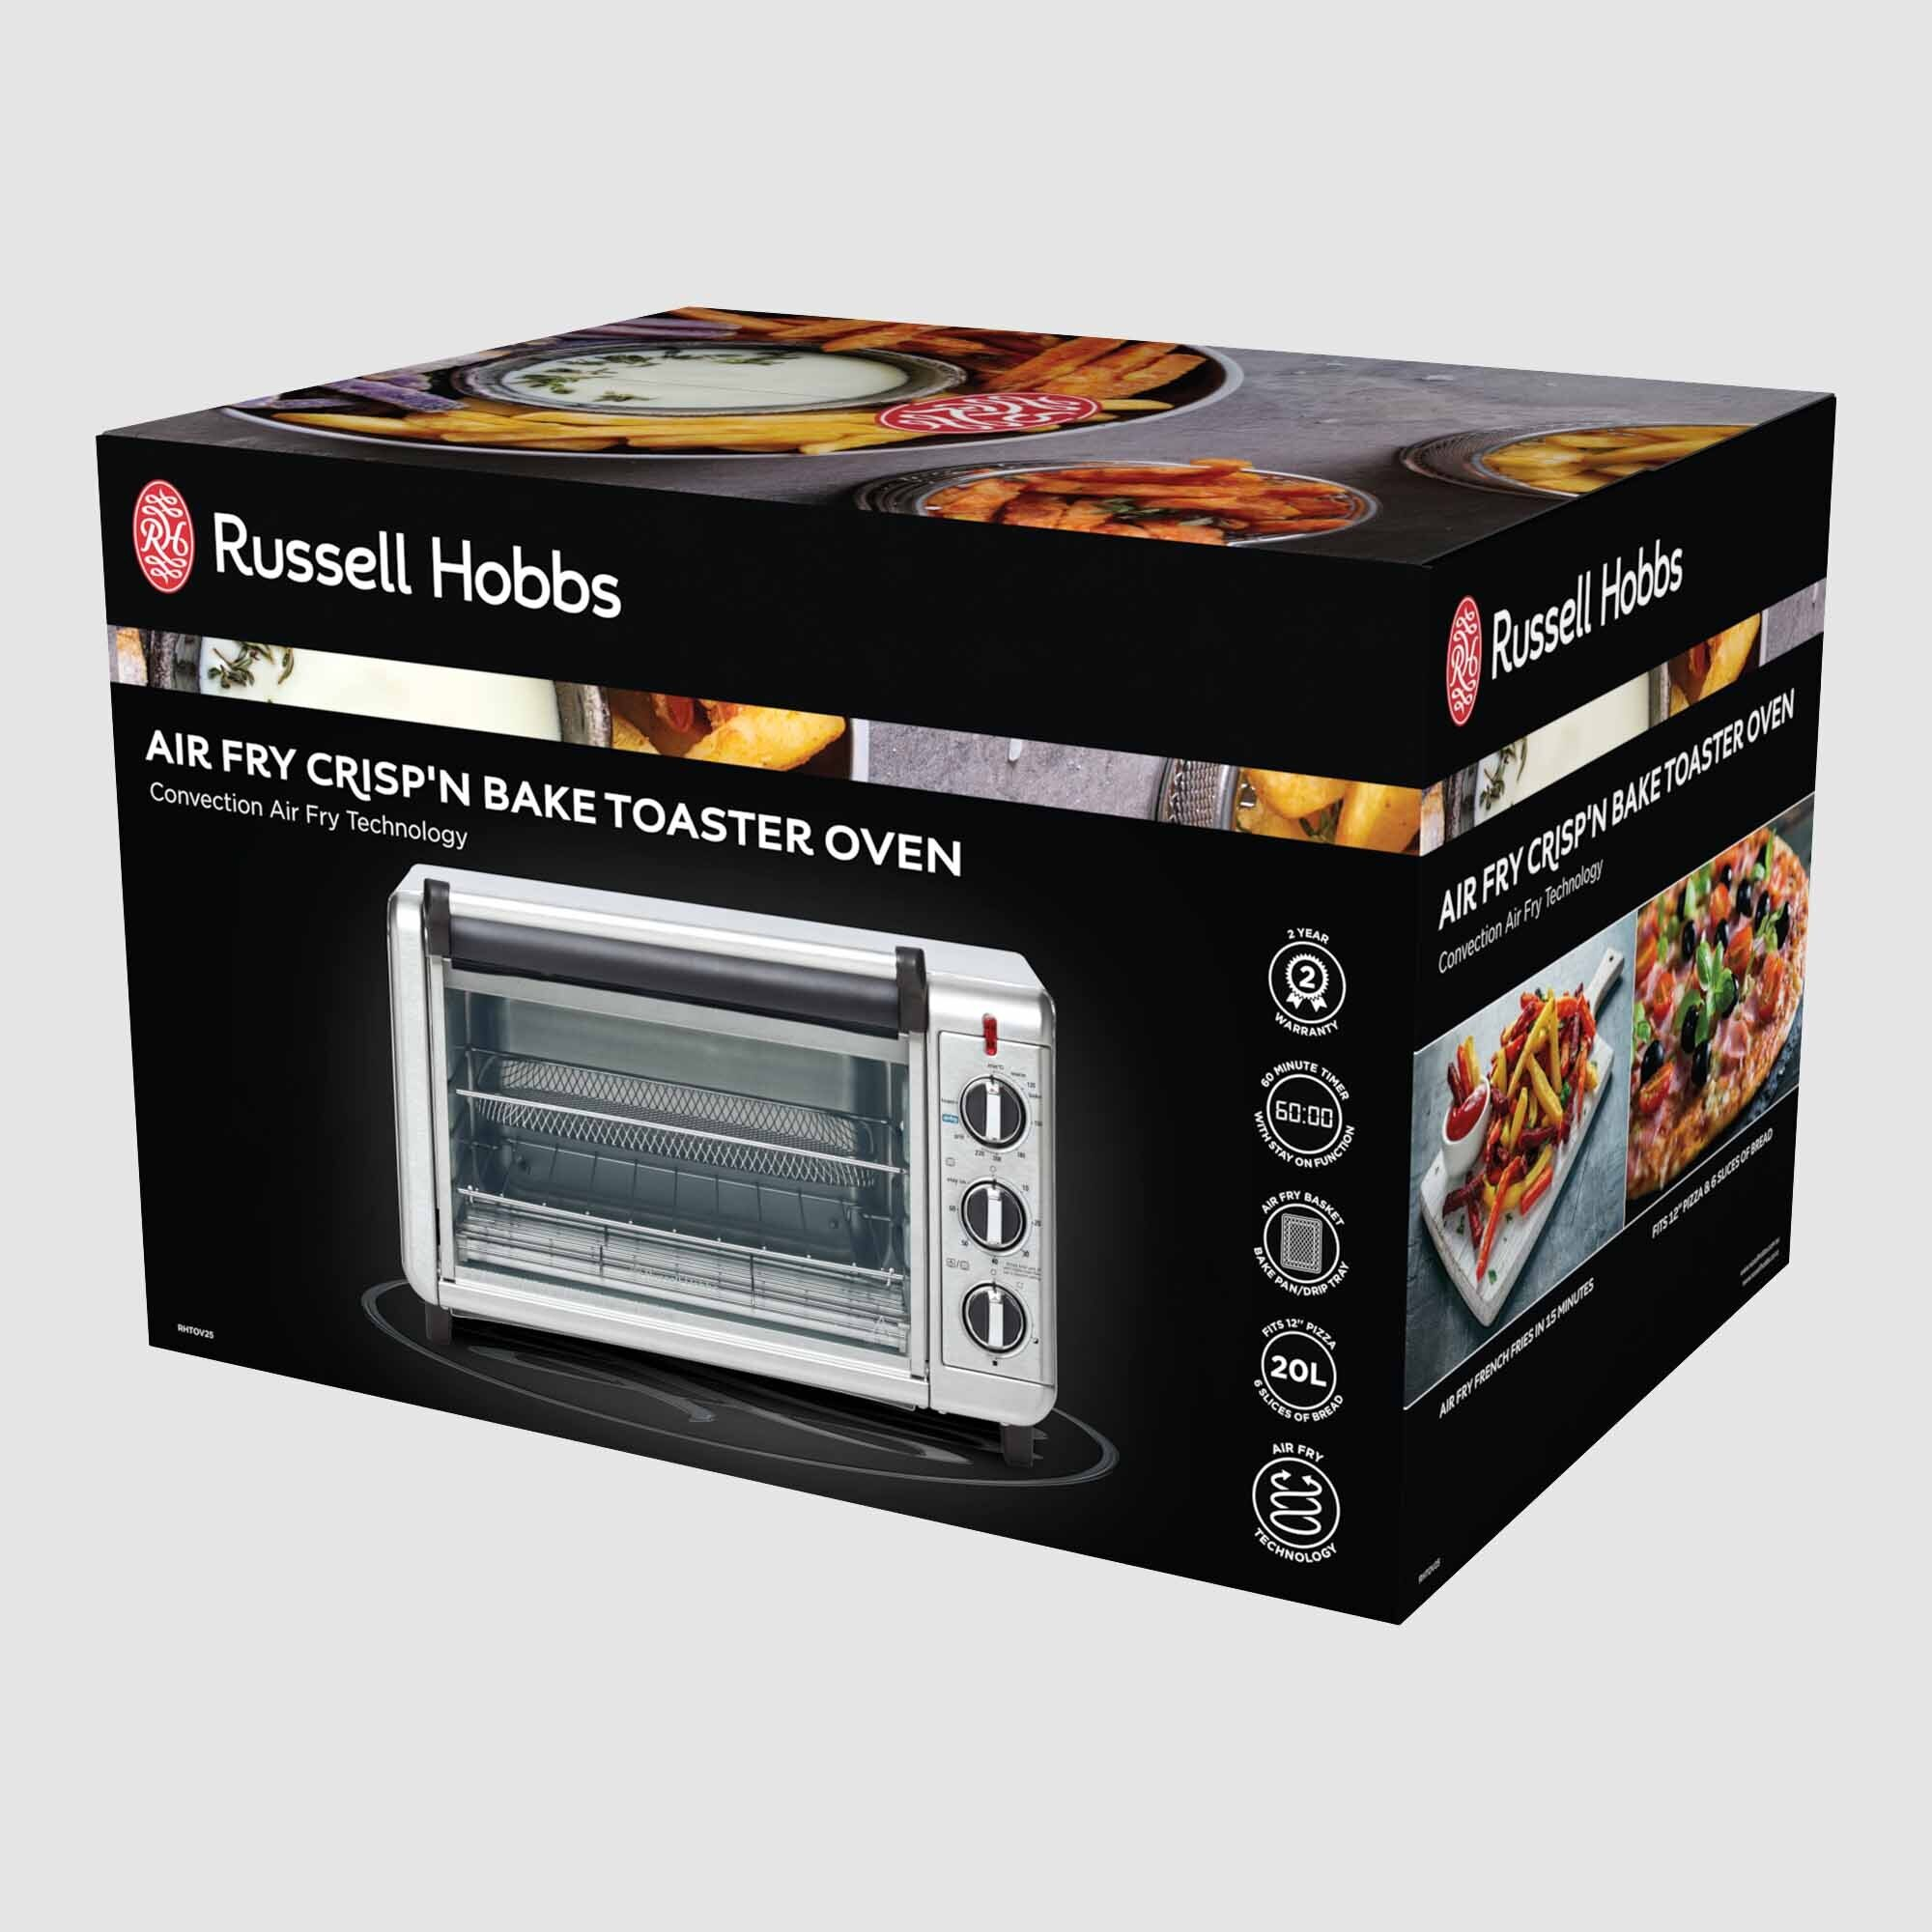 Russell Hobbs  Air Fry Crisp'N Baker Toaster Oven RHTOV25